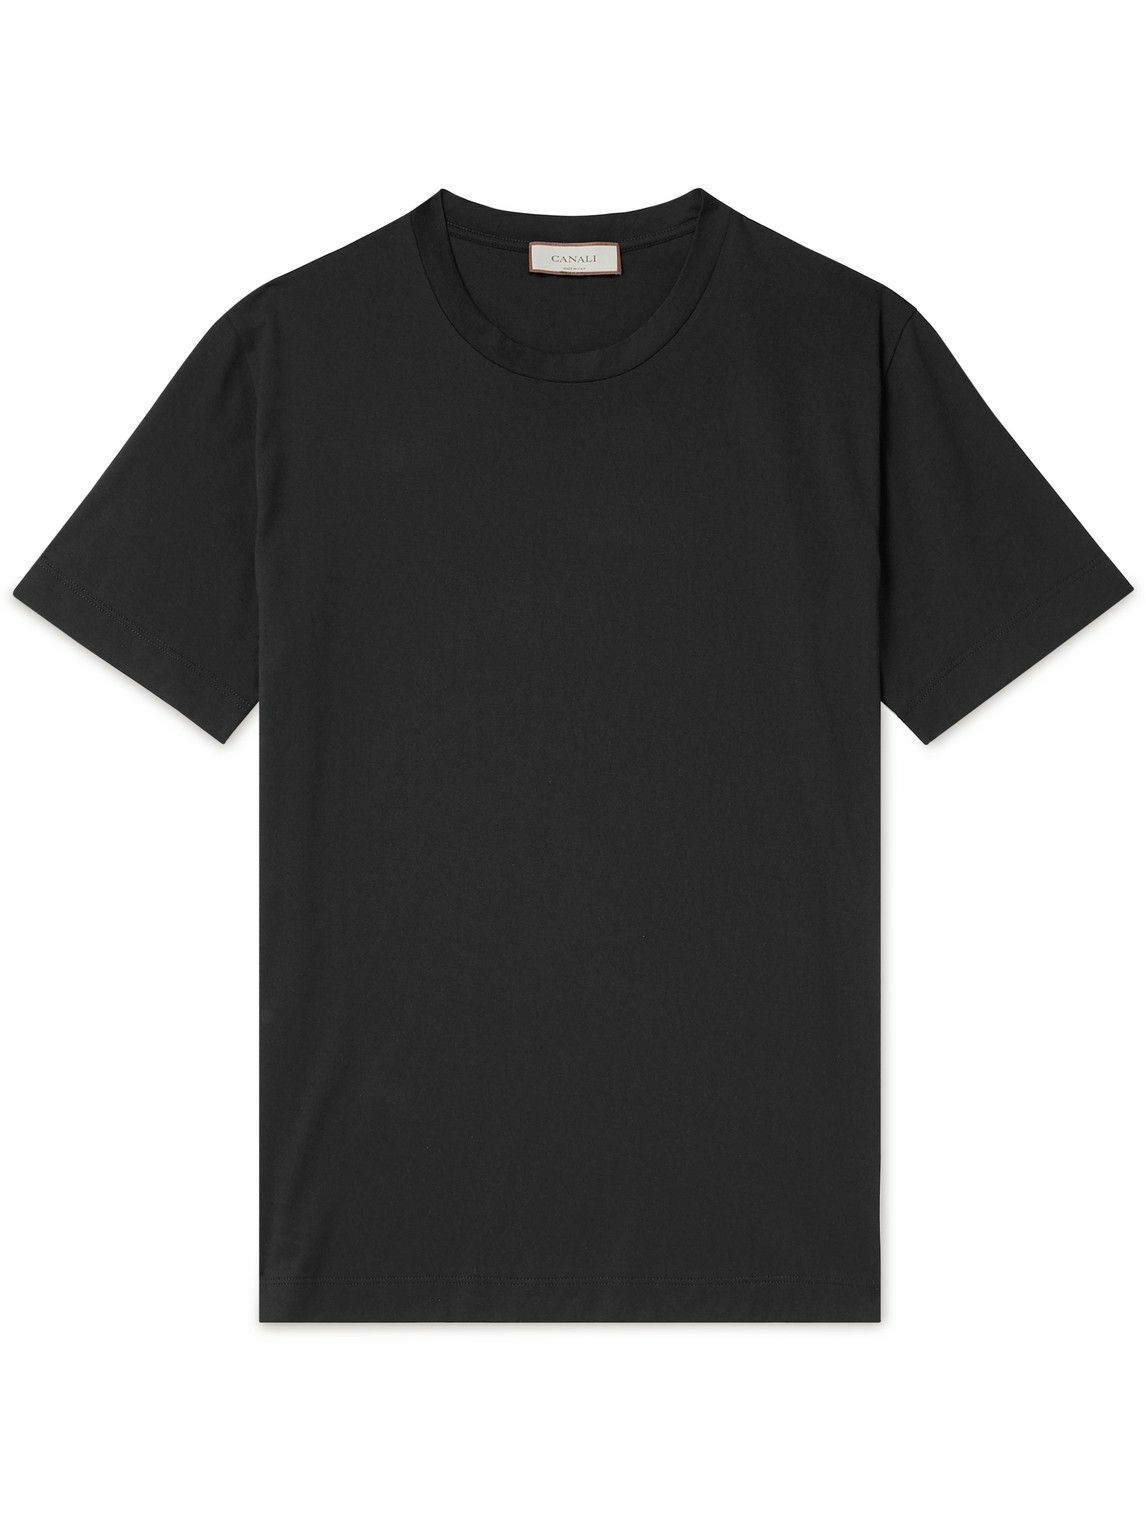 Canali - Cotton-Jersey T-Shirt - Black Canali